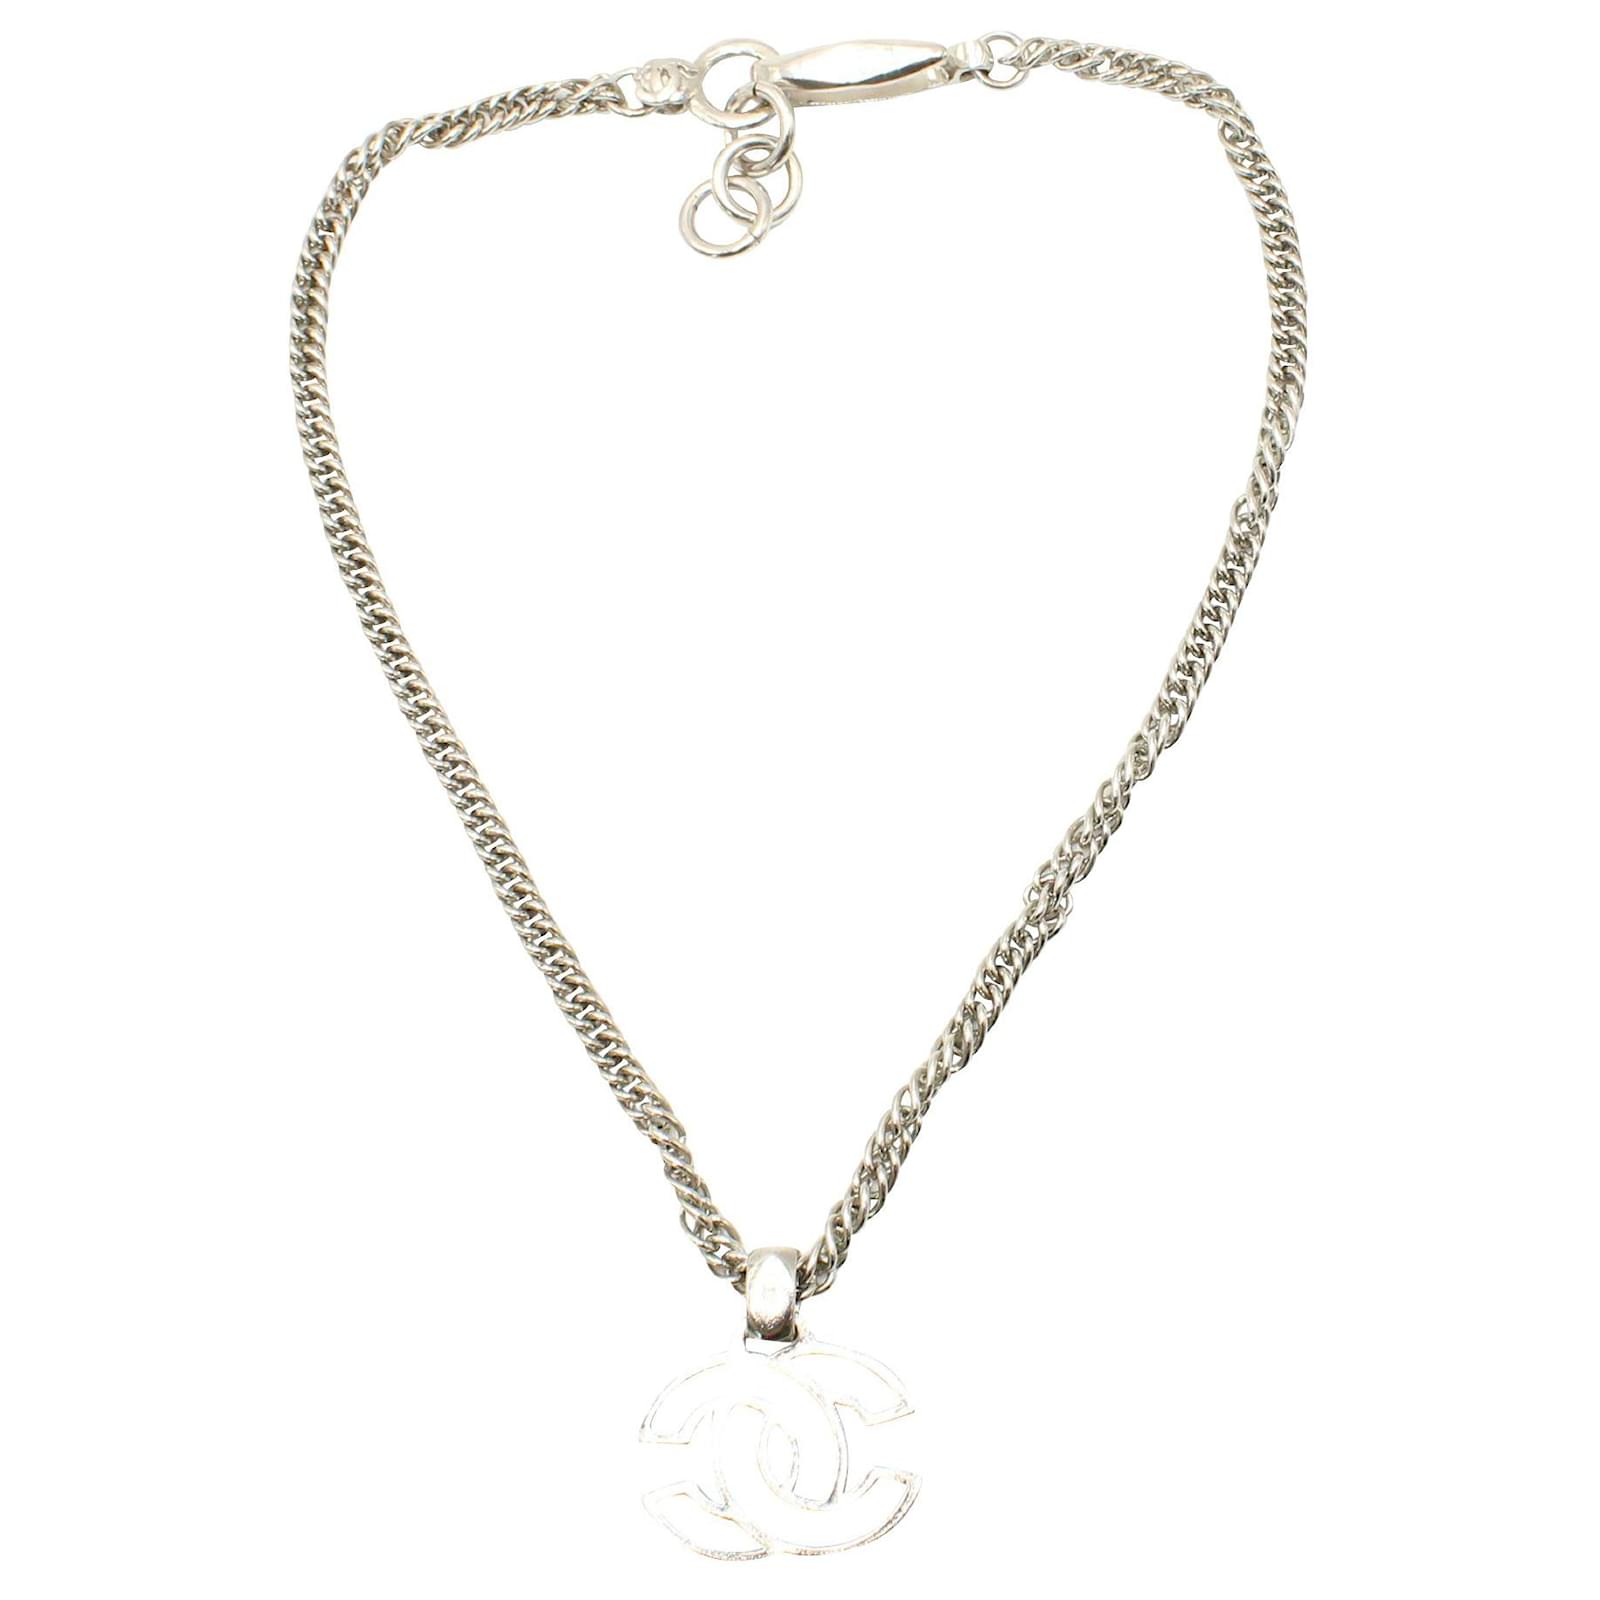 Chanel necklace pendant auth - Gem